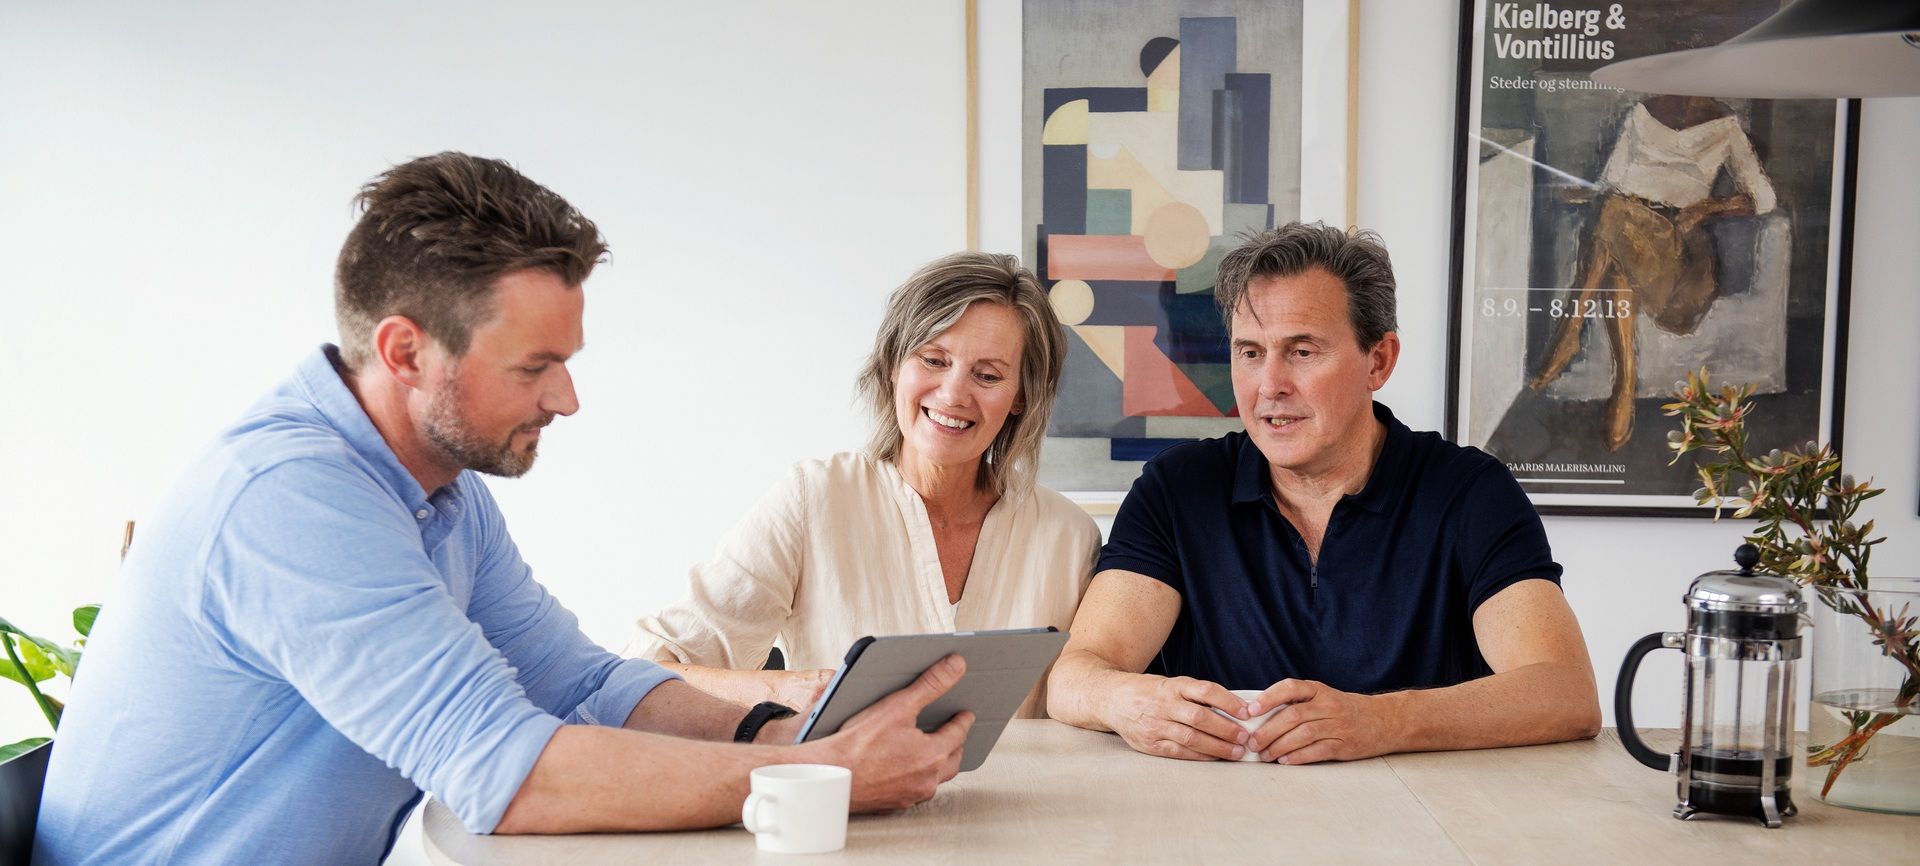 Par sitter sammen ved et bord i møte med en eiendomsmegler som viser frem noe på en tablet. Foto.